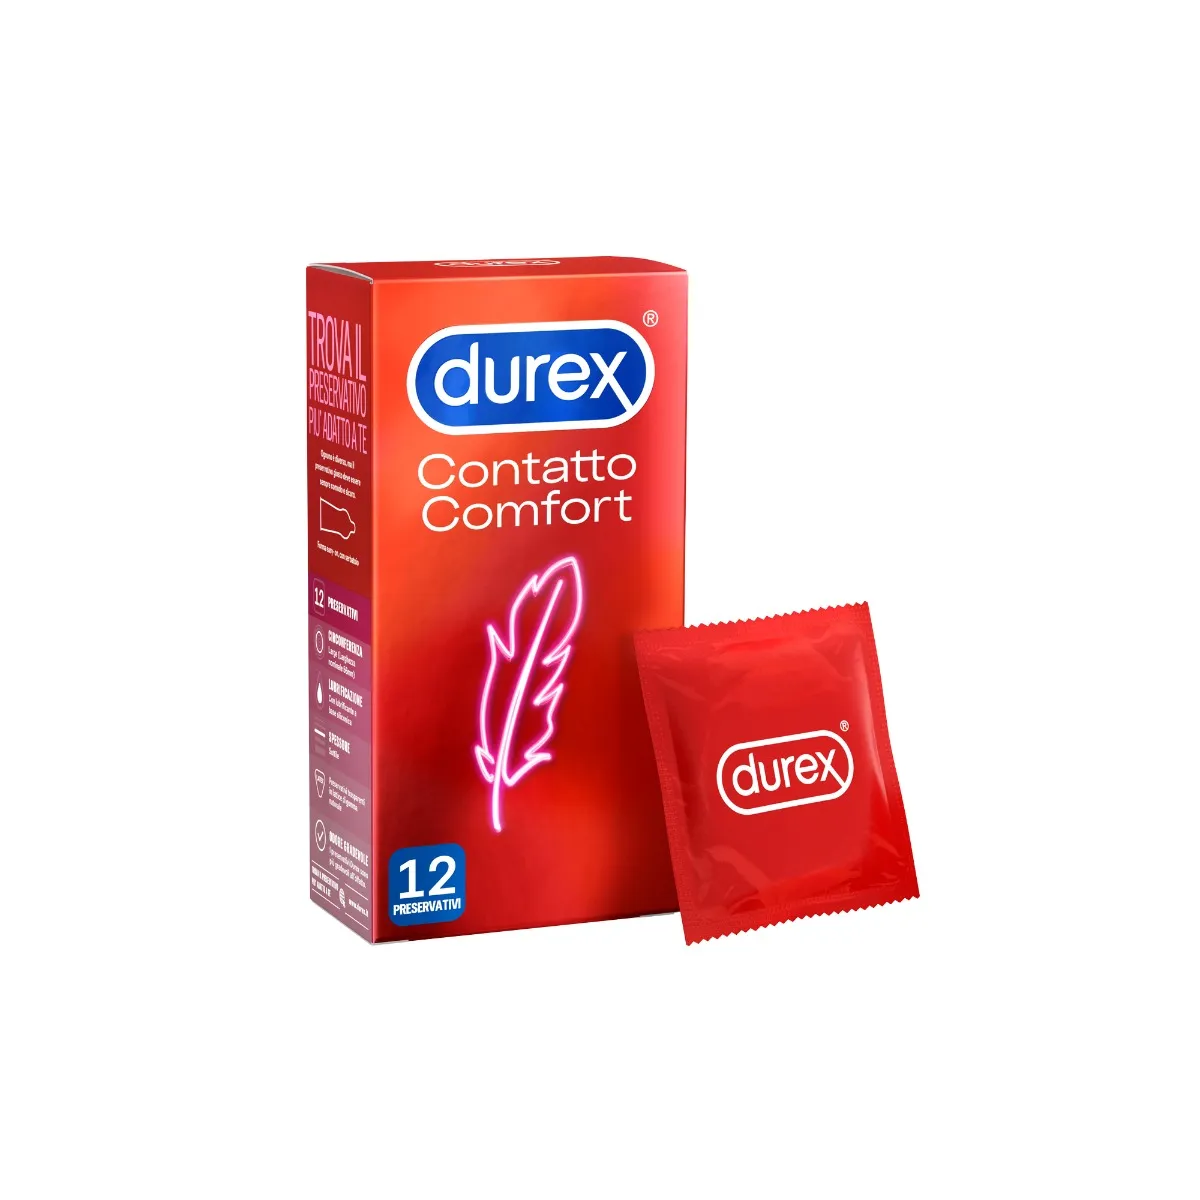 Durex Contatto Comfort Profilattici Sottili 12 Pezzi Elevata Lubrificazione